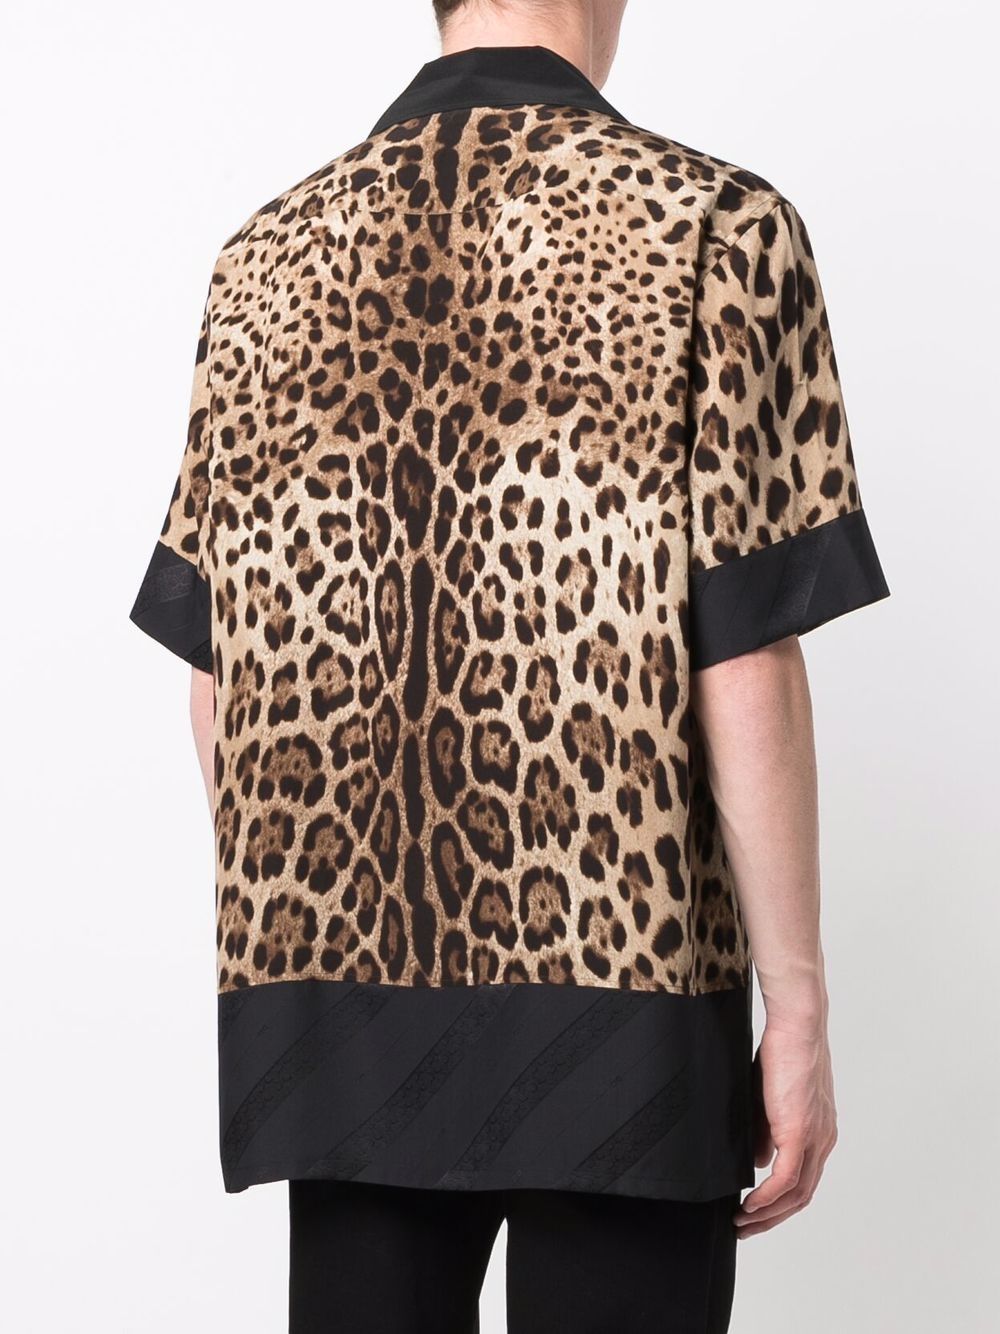 фото Dolce & gabbana рубашка с короткими рукавами и леопардовым принтом